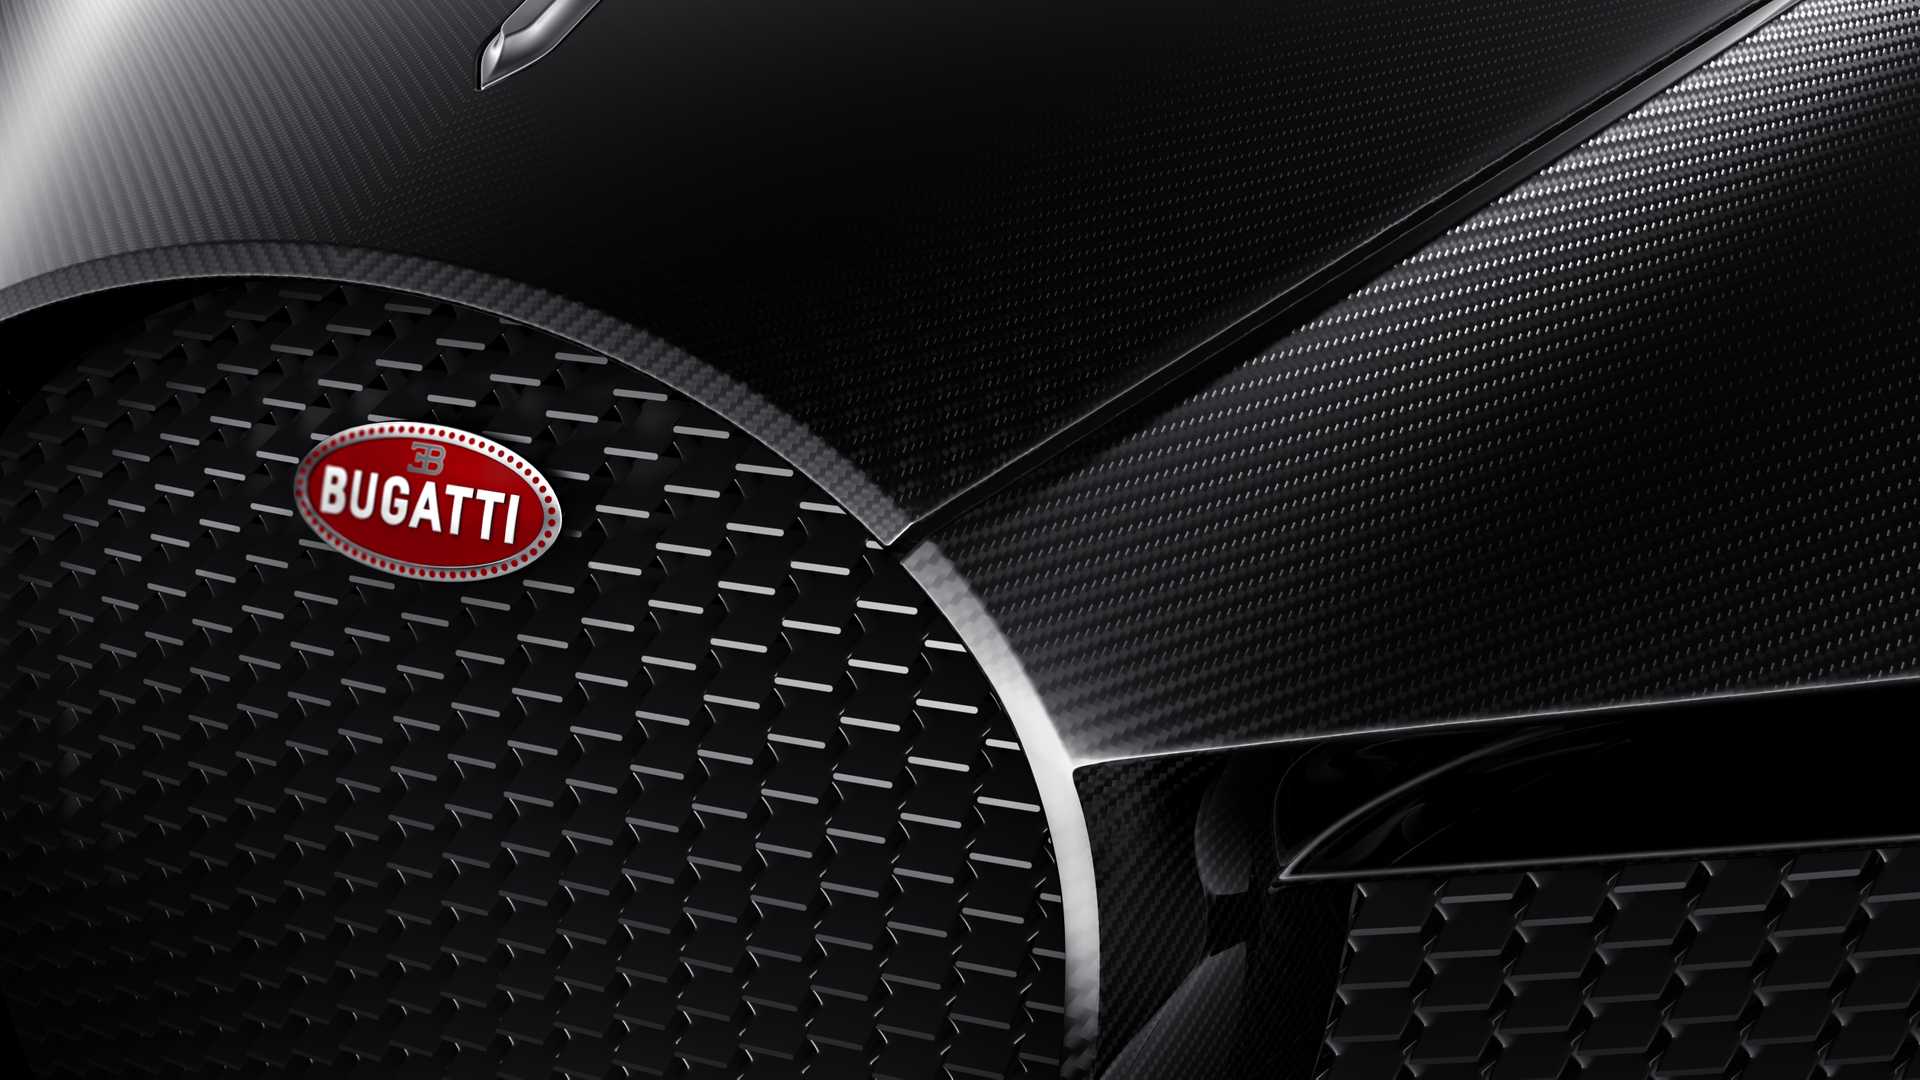 2019 Bugatti La Voiture Noire Grill Wallpapers #43 of 50